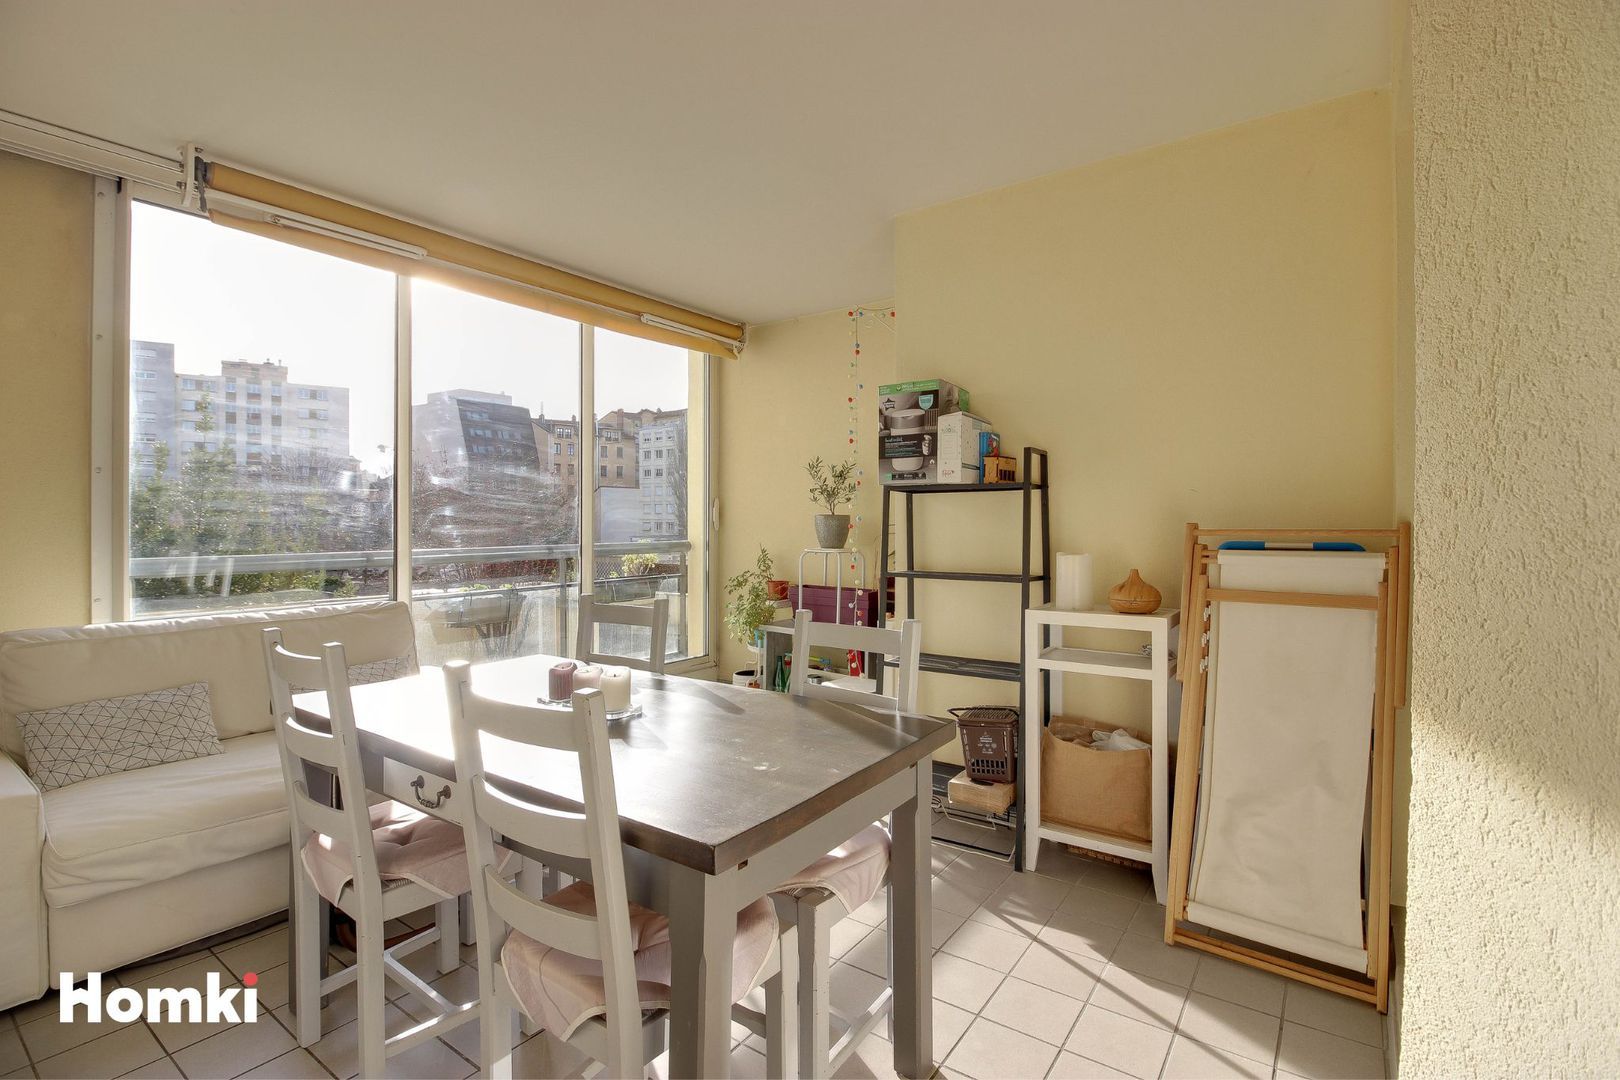 Homki - Vente Appartement  de 58.27 m² à Villeurbanne 69100